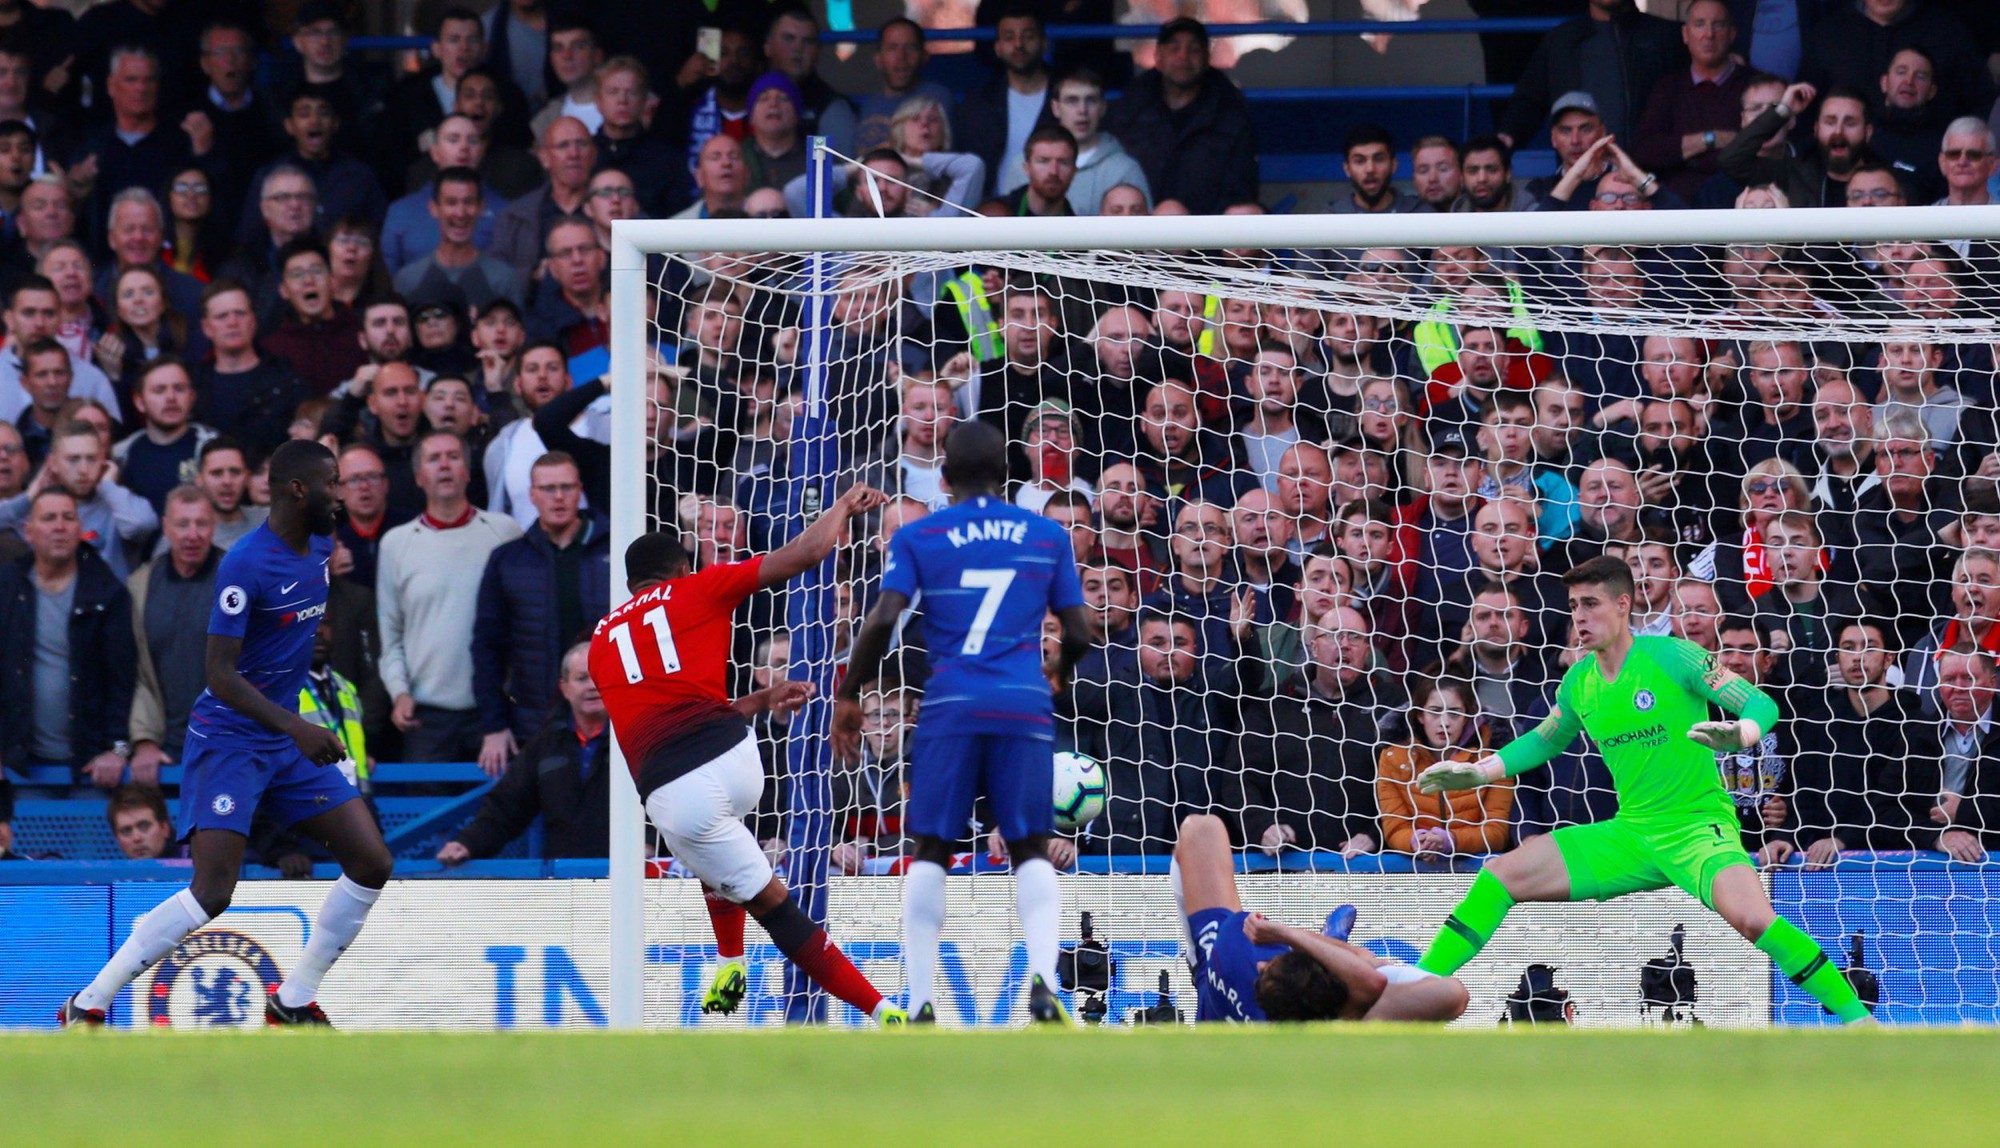 David Luiz đá xoáy Man Utd: Chỉ có một đội chơi bóng ở Stamford Bridge - Ảnh 5.